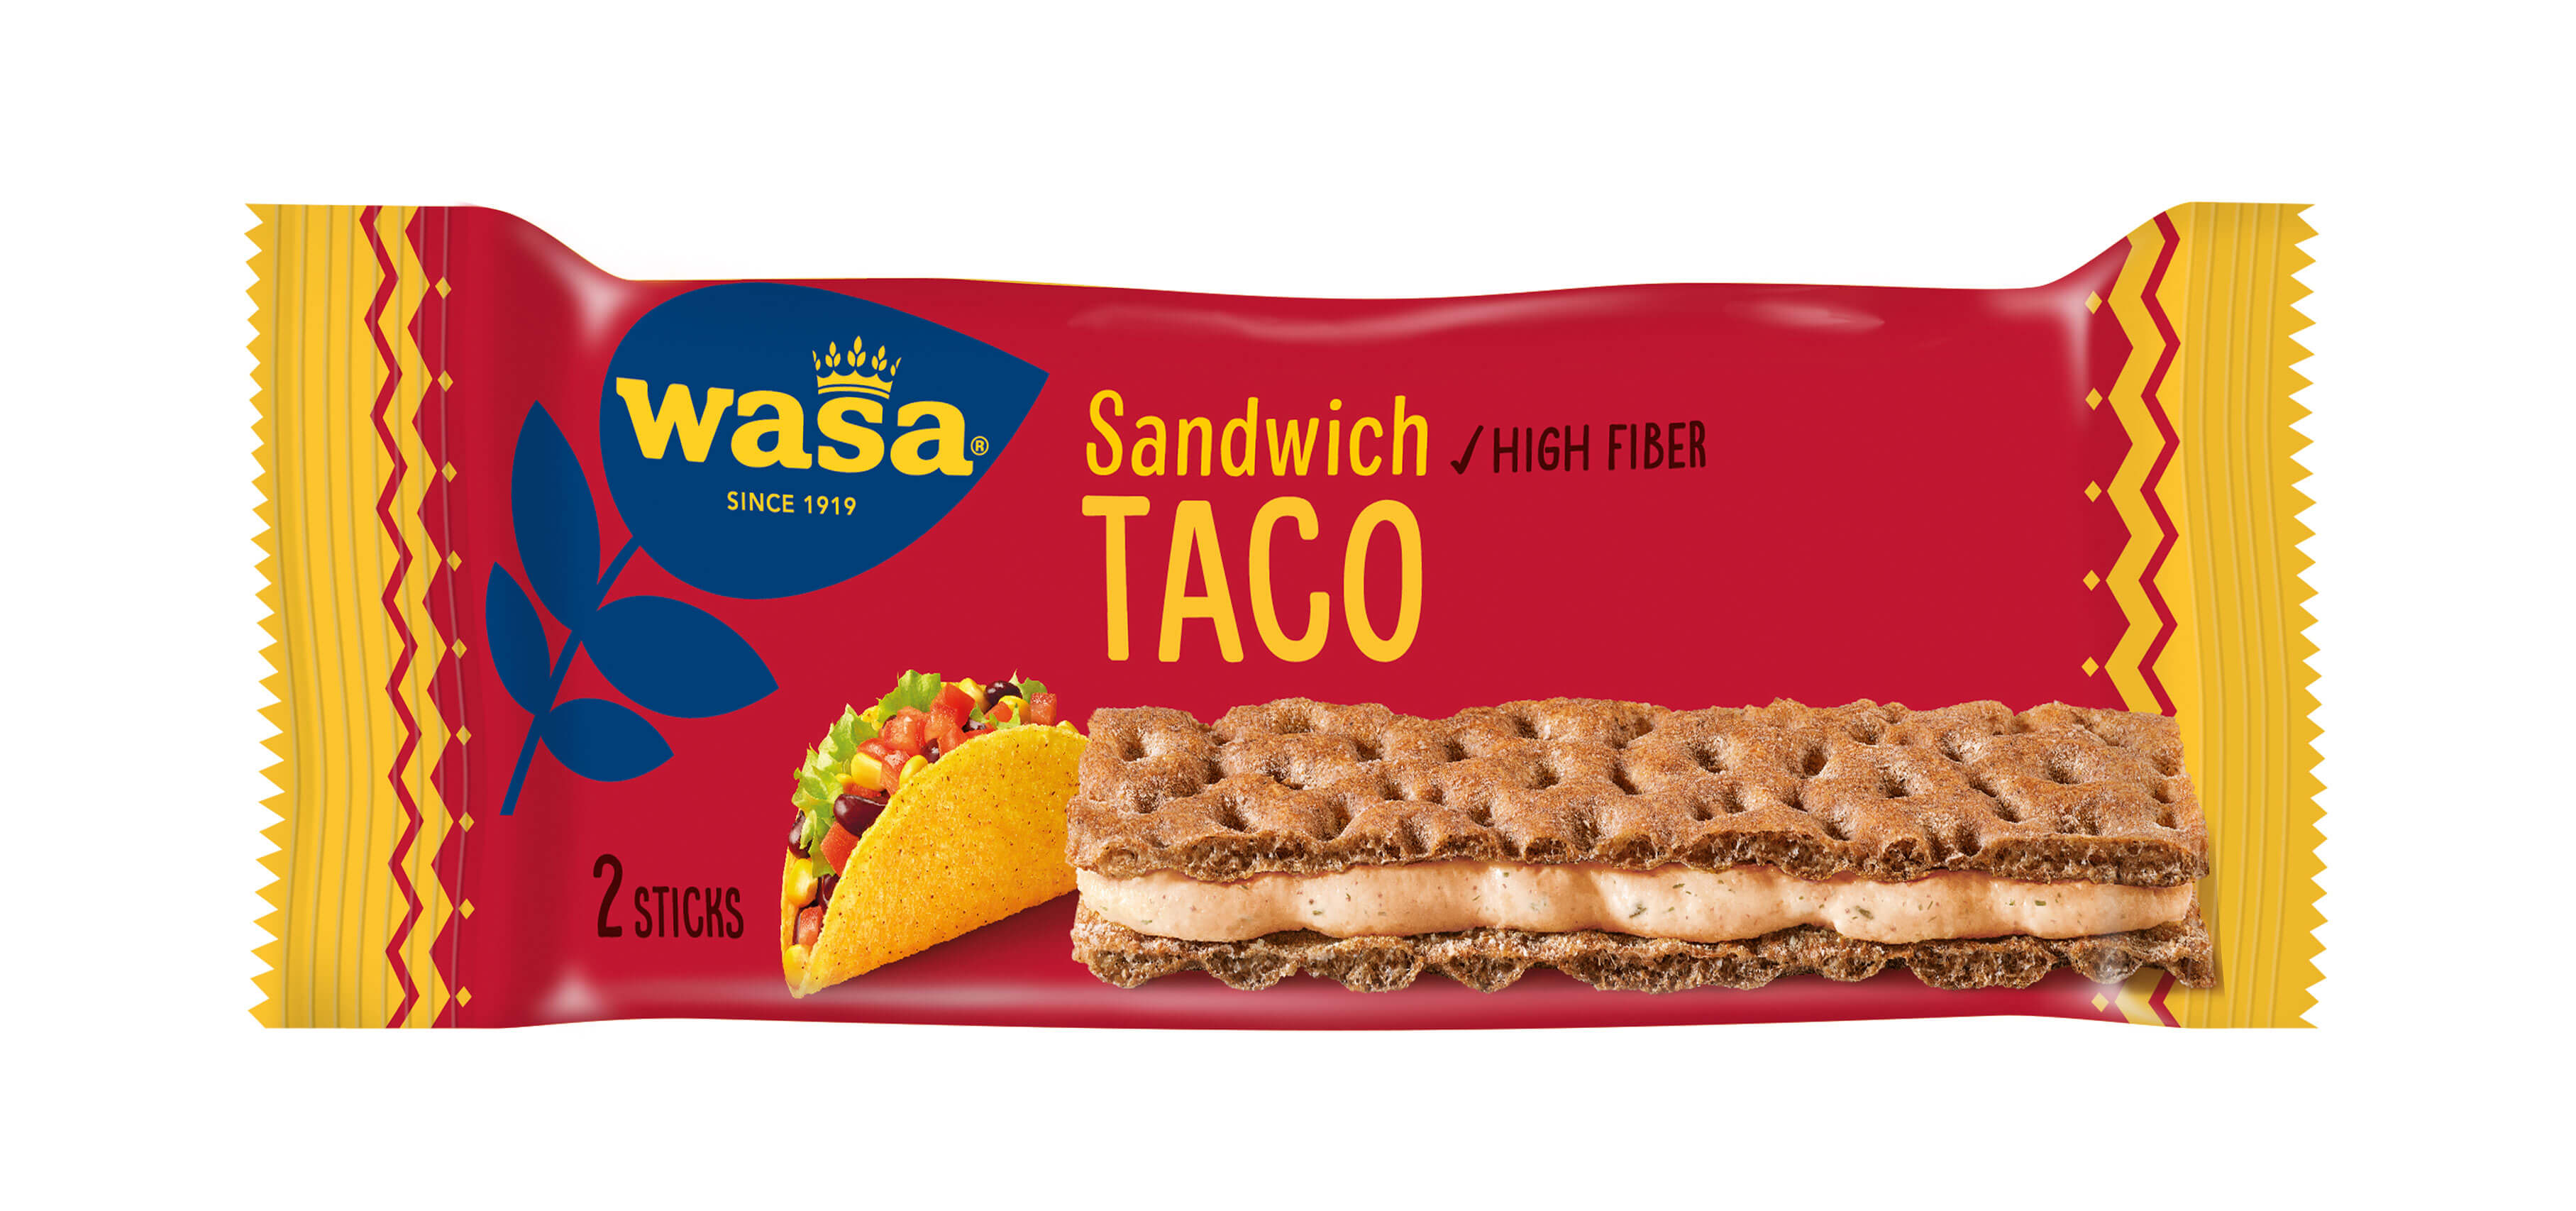 Wasa Sandwich Taco - Upptäck ett veganskt mellanmål, gott knäckebröd med krämig fyllning. Utmärkt som mellanmål på språng och som tips på mellis barn, efter skolan eller innan träning.